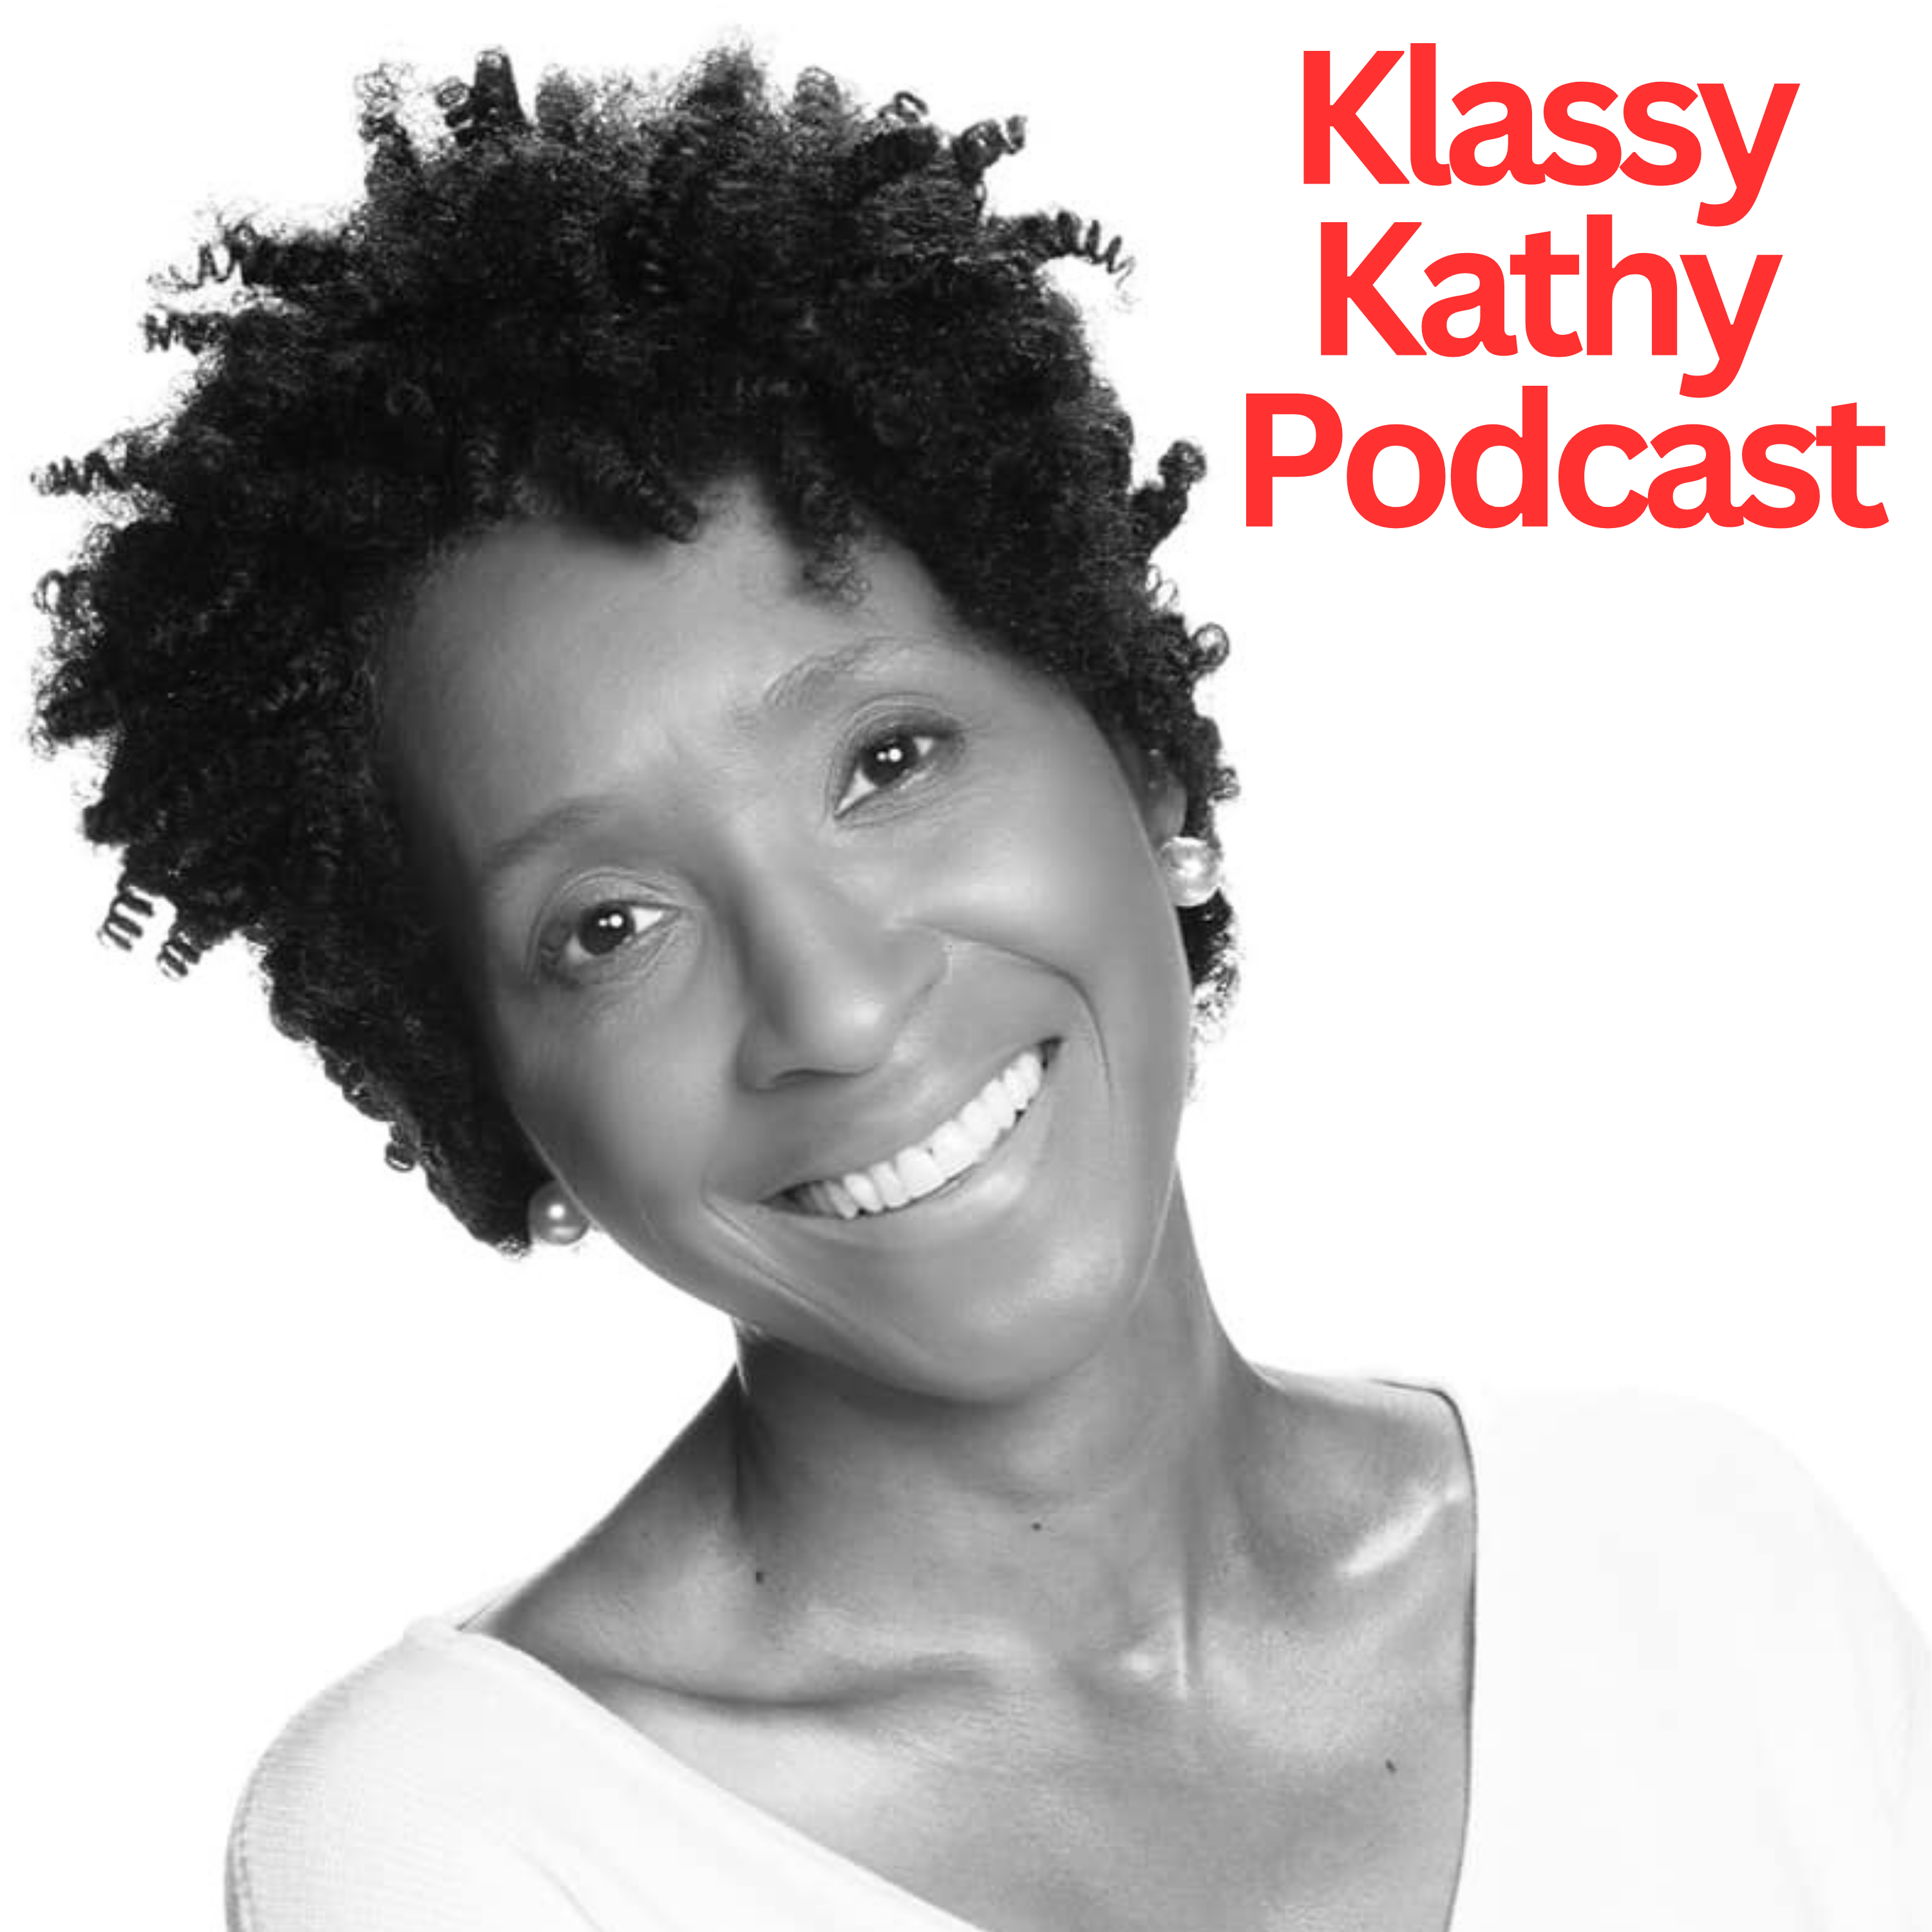 Klassy Kathy Podcast Trailer